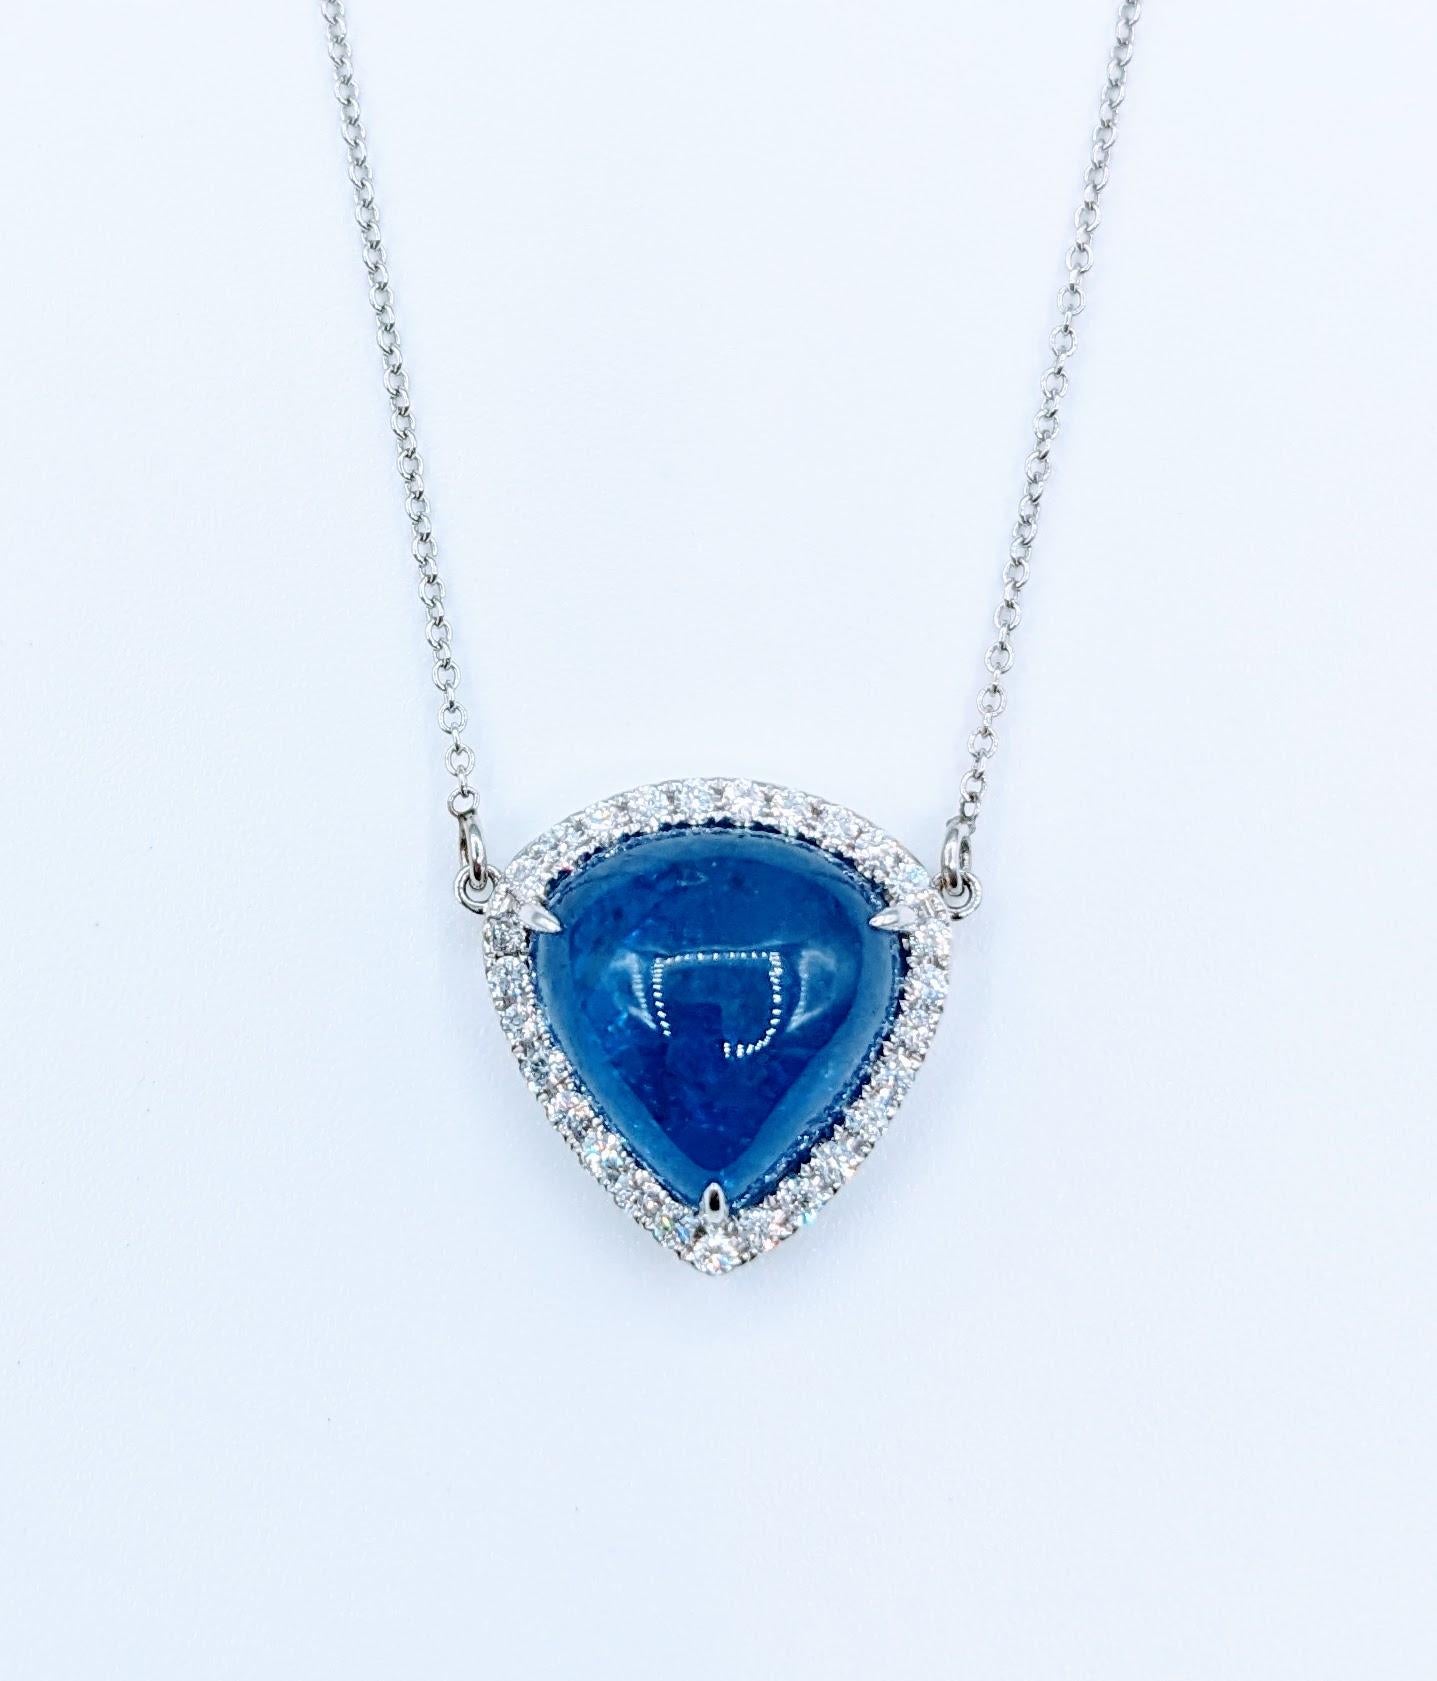 Vivid 7.27ct Cabochon Tanzanite & Diamond Pendant Necklace For Sale 1